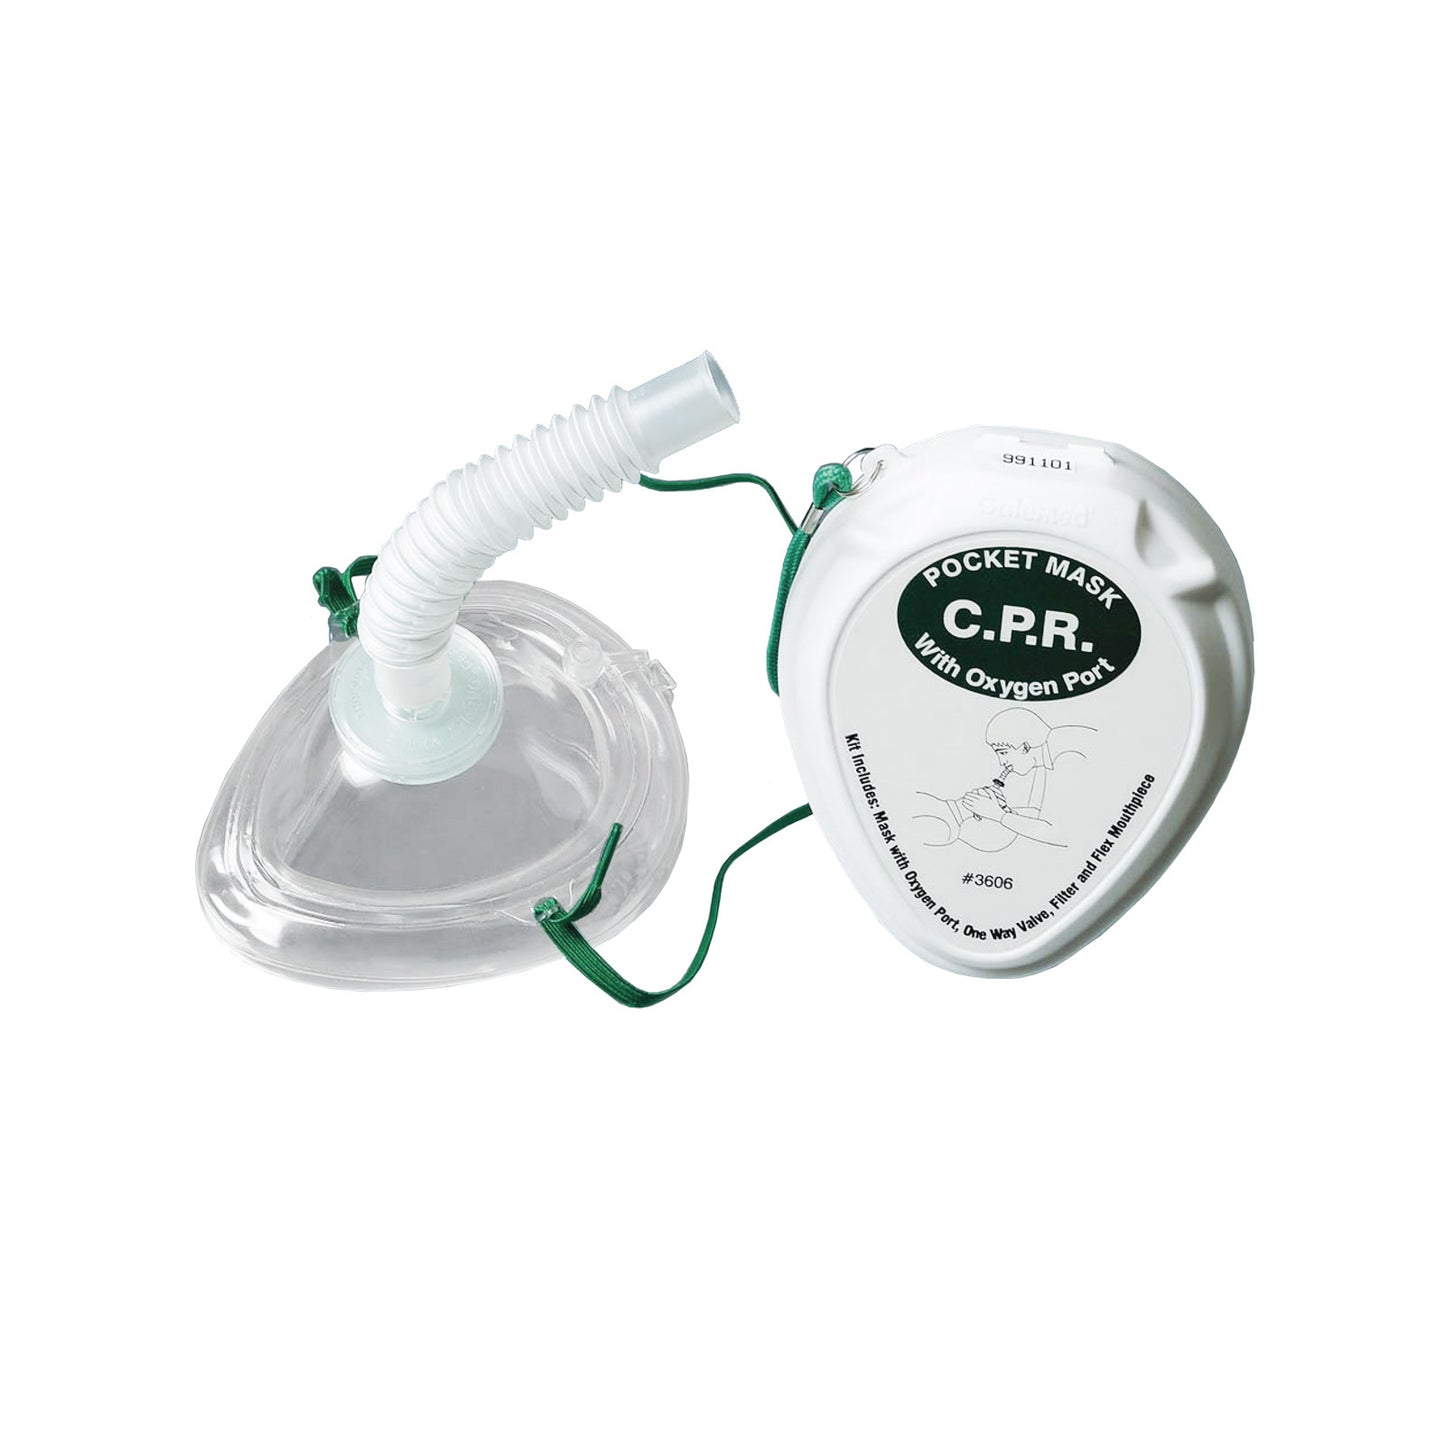 Pocket CPR Resuscitator & Filter